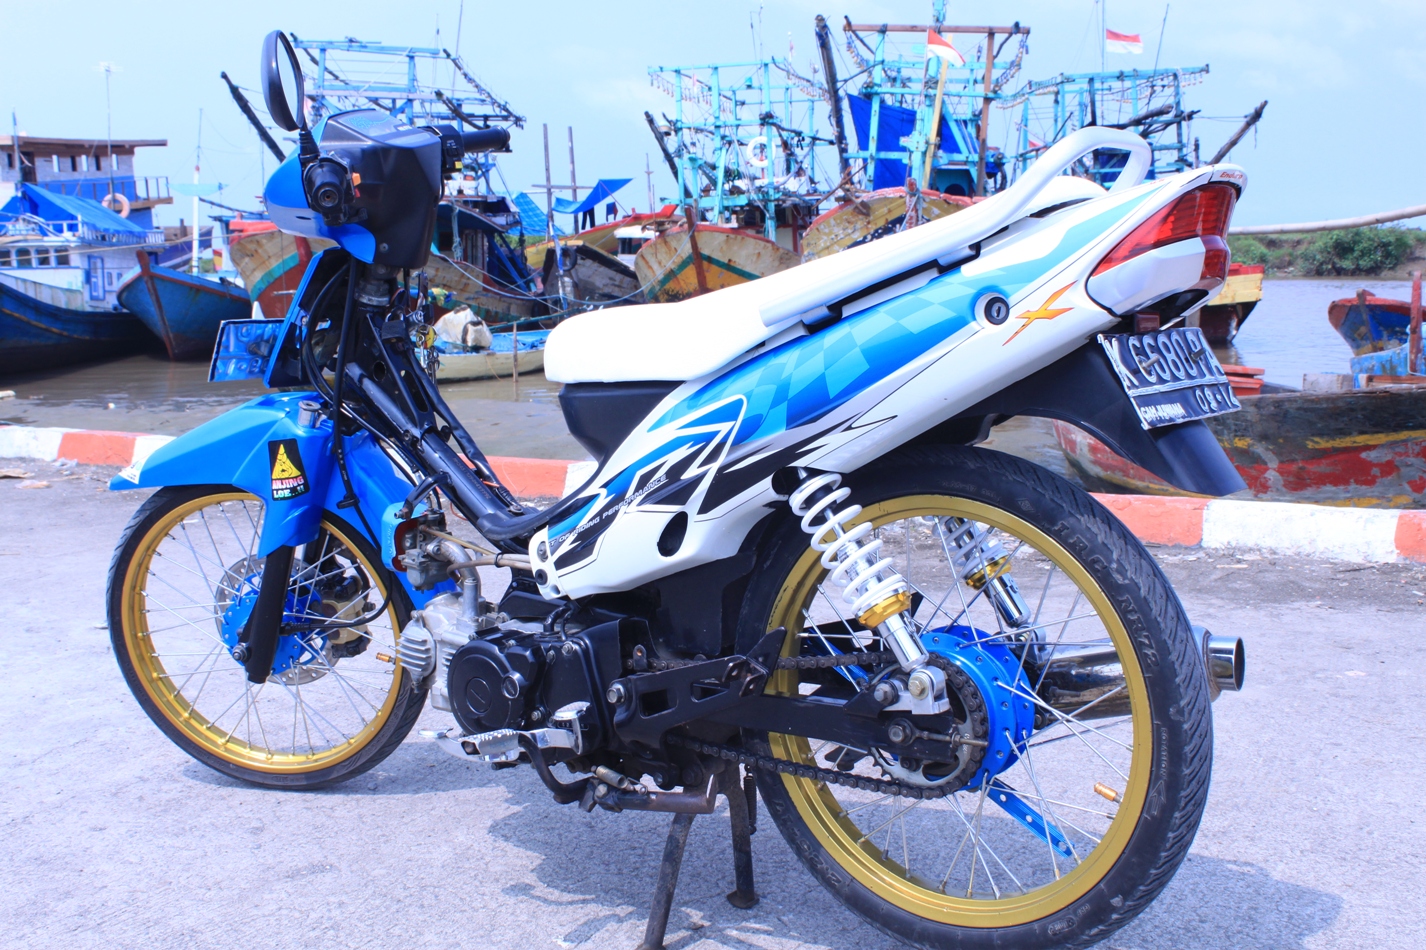 Modifikasi Motor Yamaha Vega R Db Motorcycle Review And